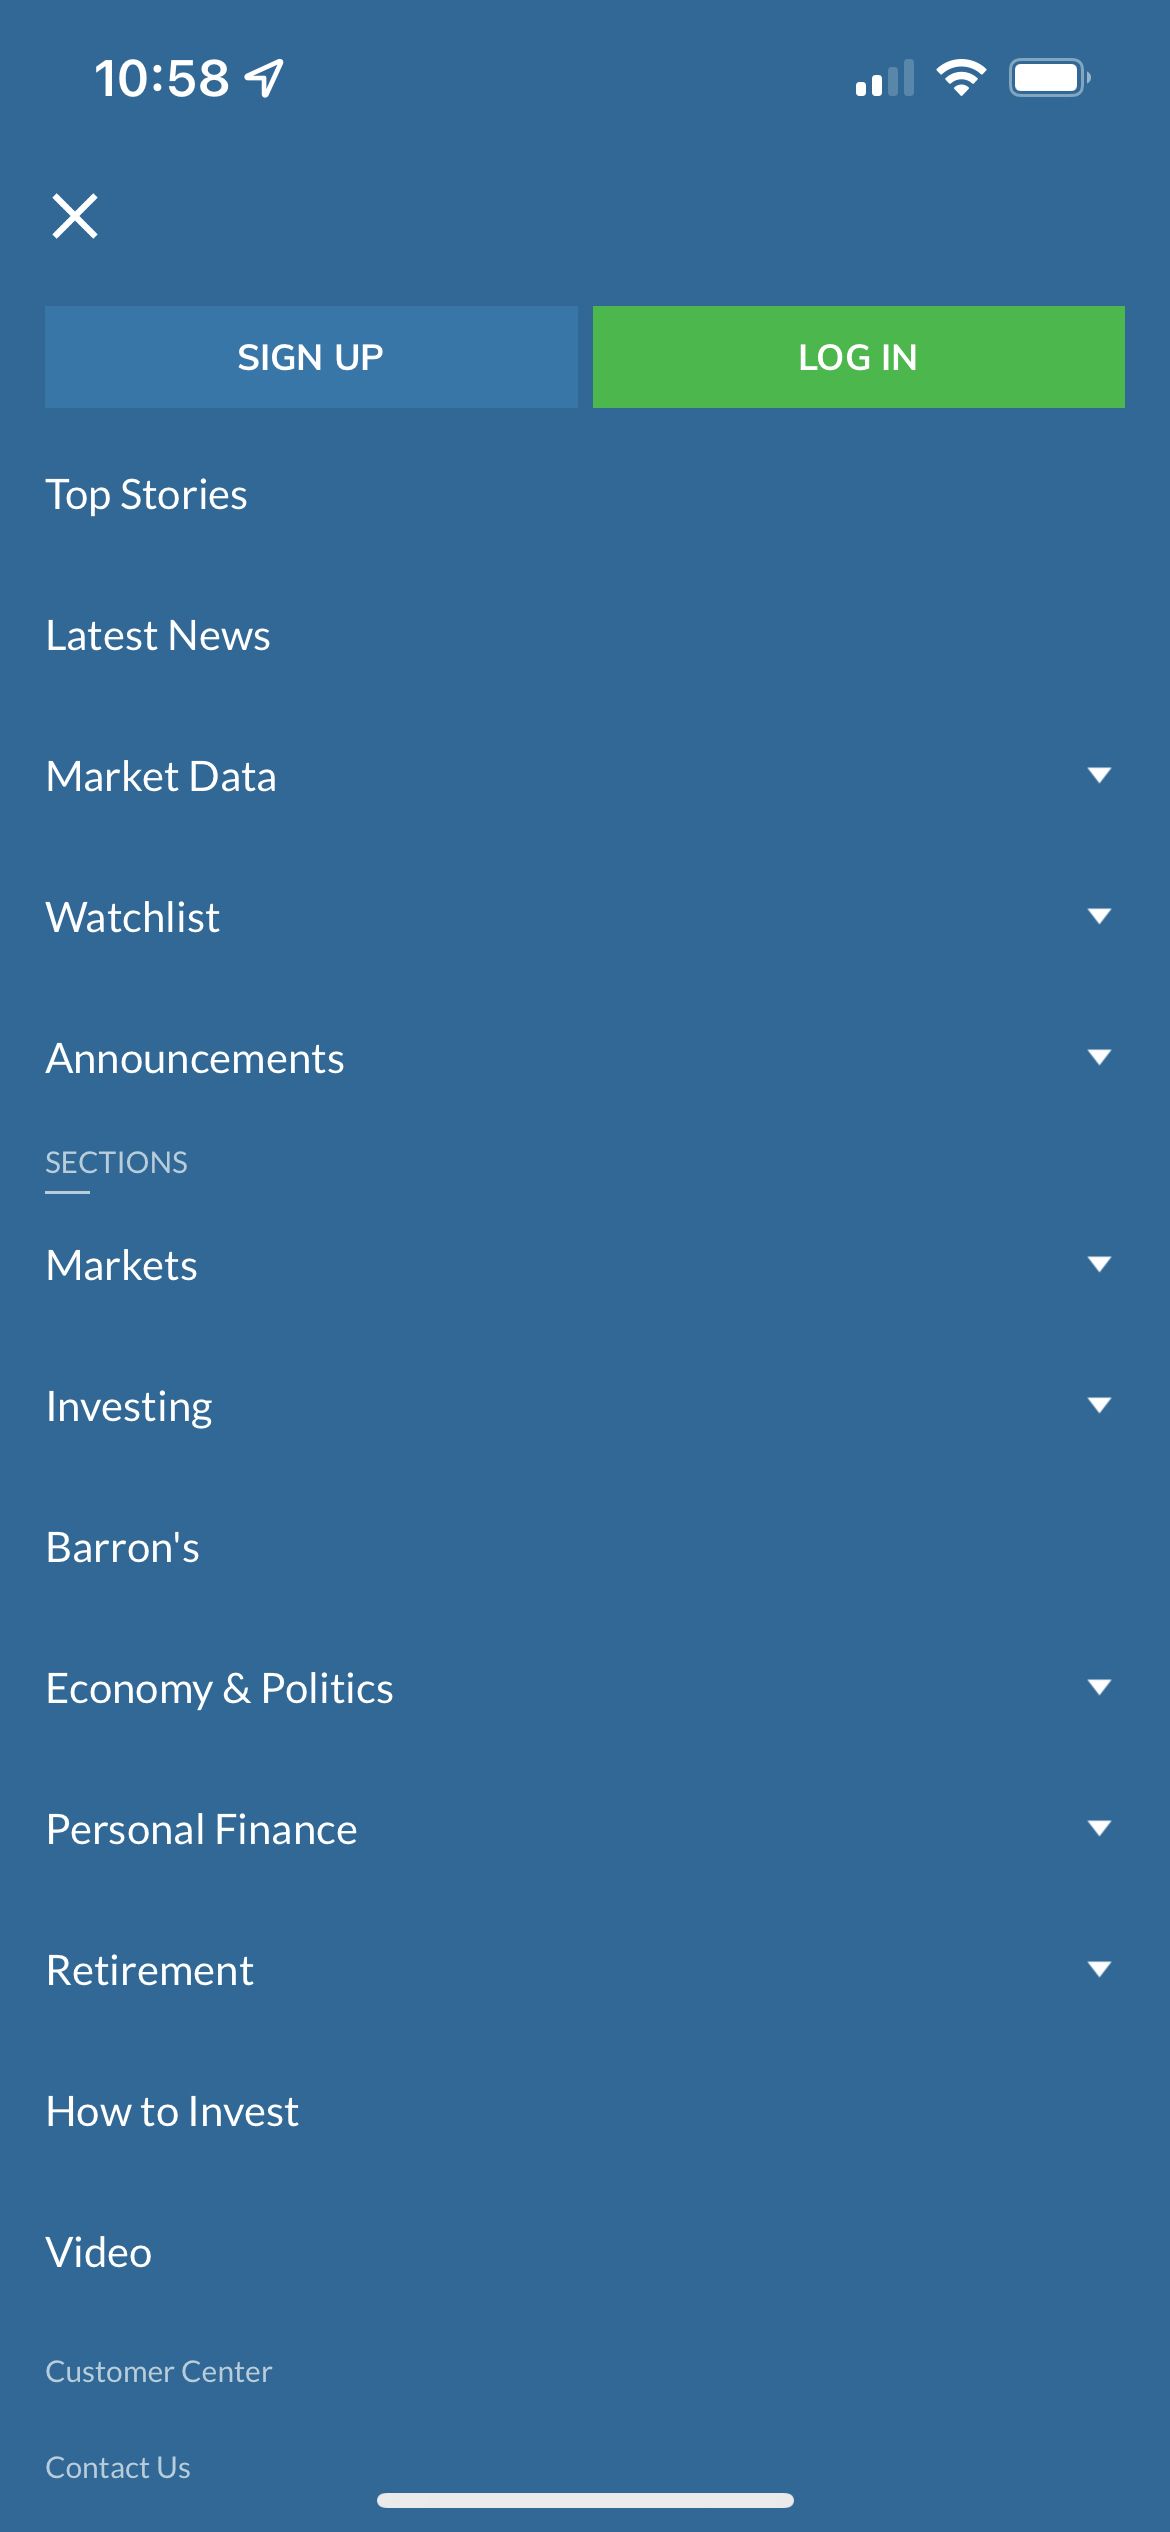 MarketWatch Categories